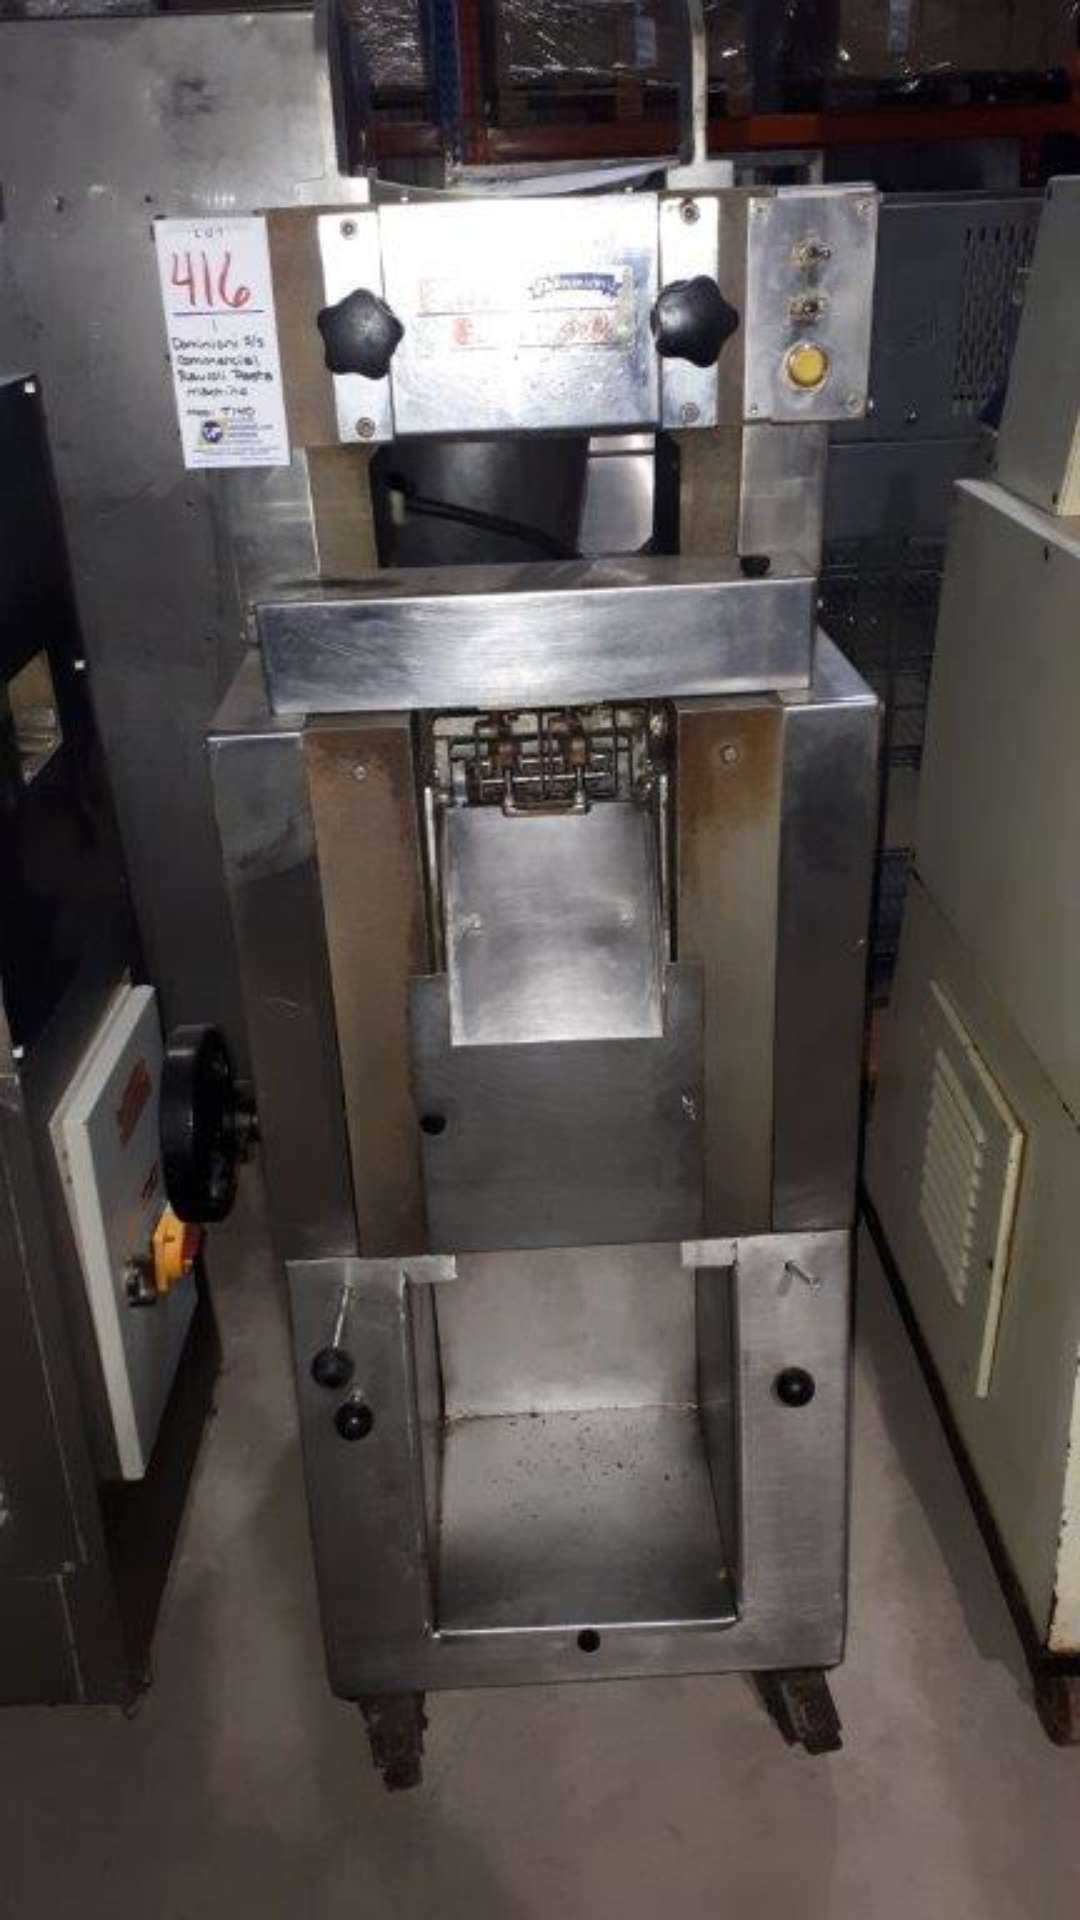 Dominioni S/S Commercial ravioli pasta machine, model: T140